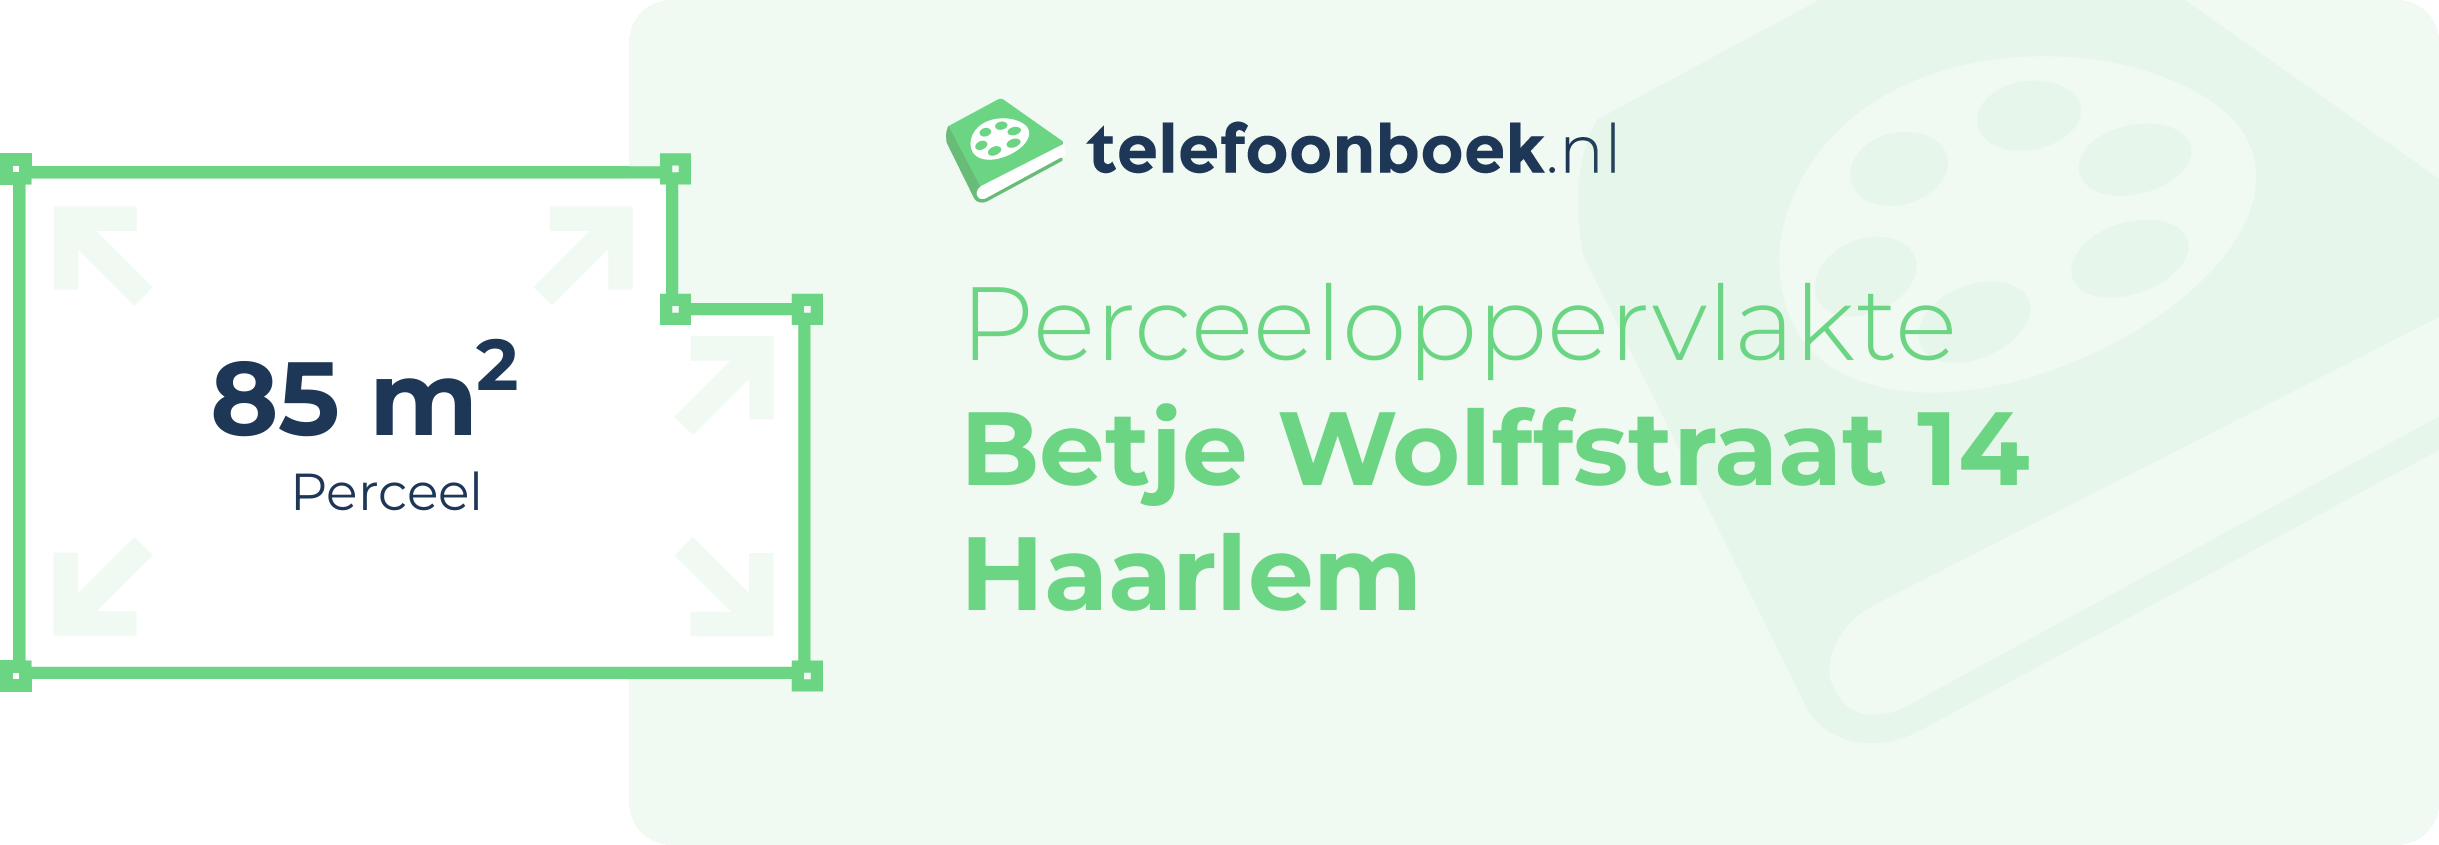 Perceeloppervlakte Betje Wolffstraat 14 Haarlem